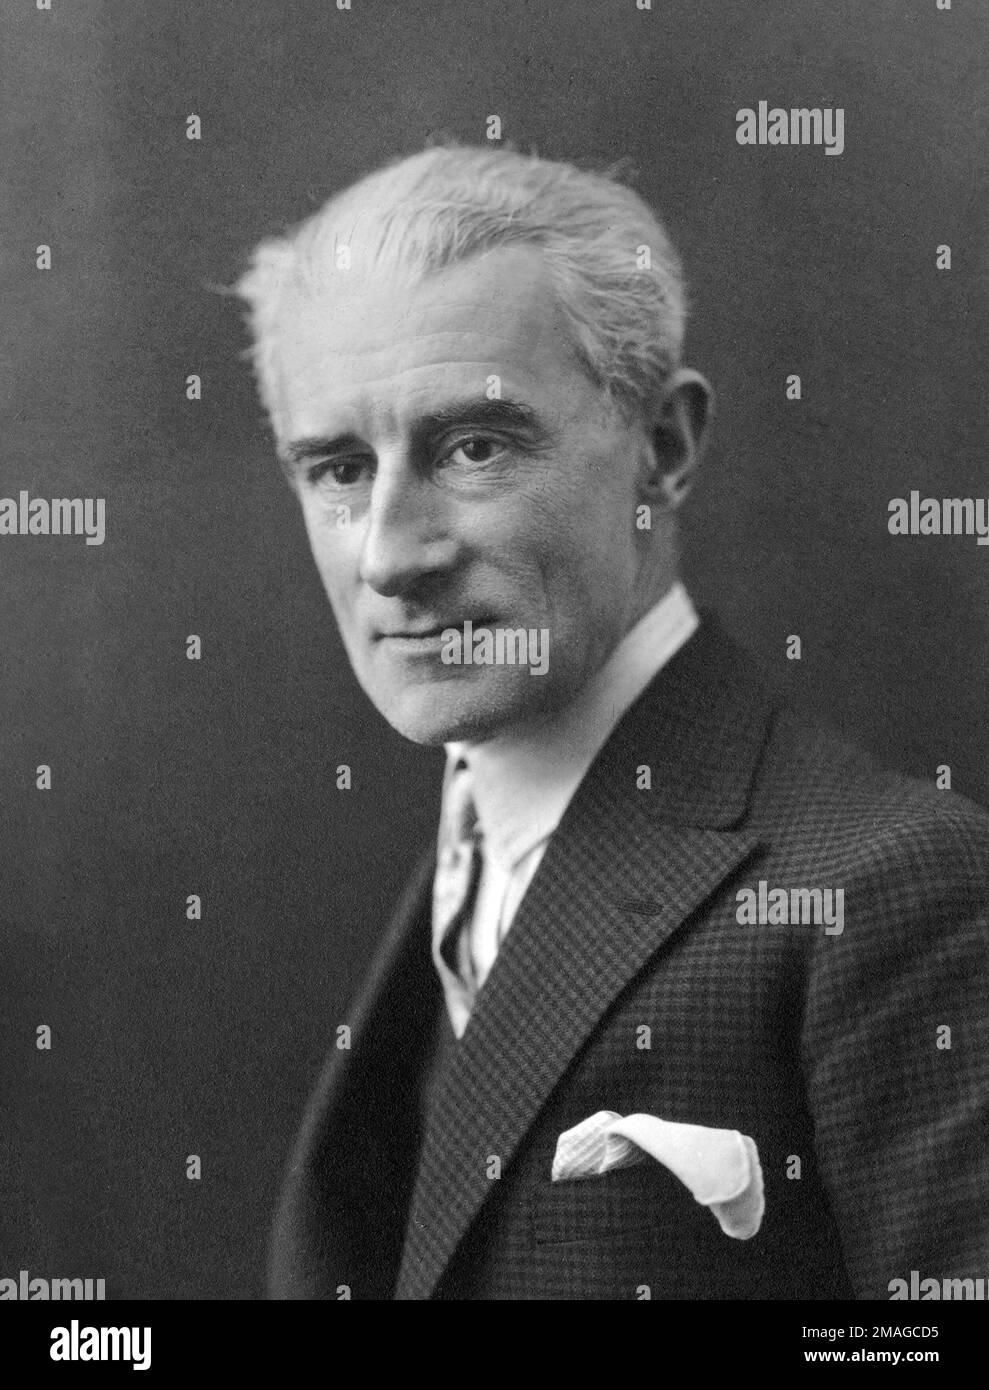 Ravel. Portrait du compositeur français Joseph Maurice Ravel (1875-1937), 1925 Banque D'Images